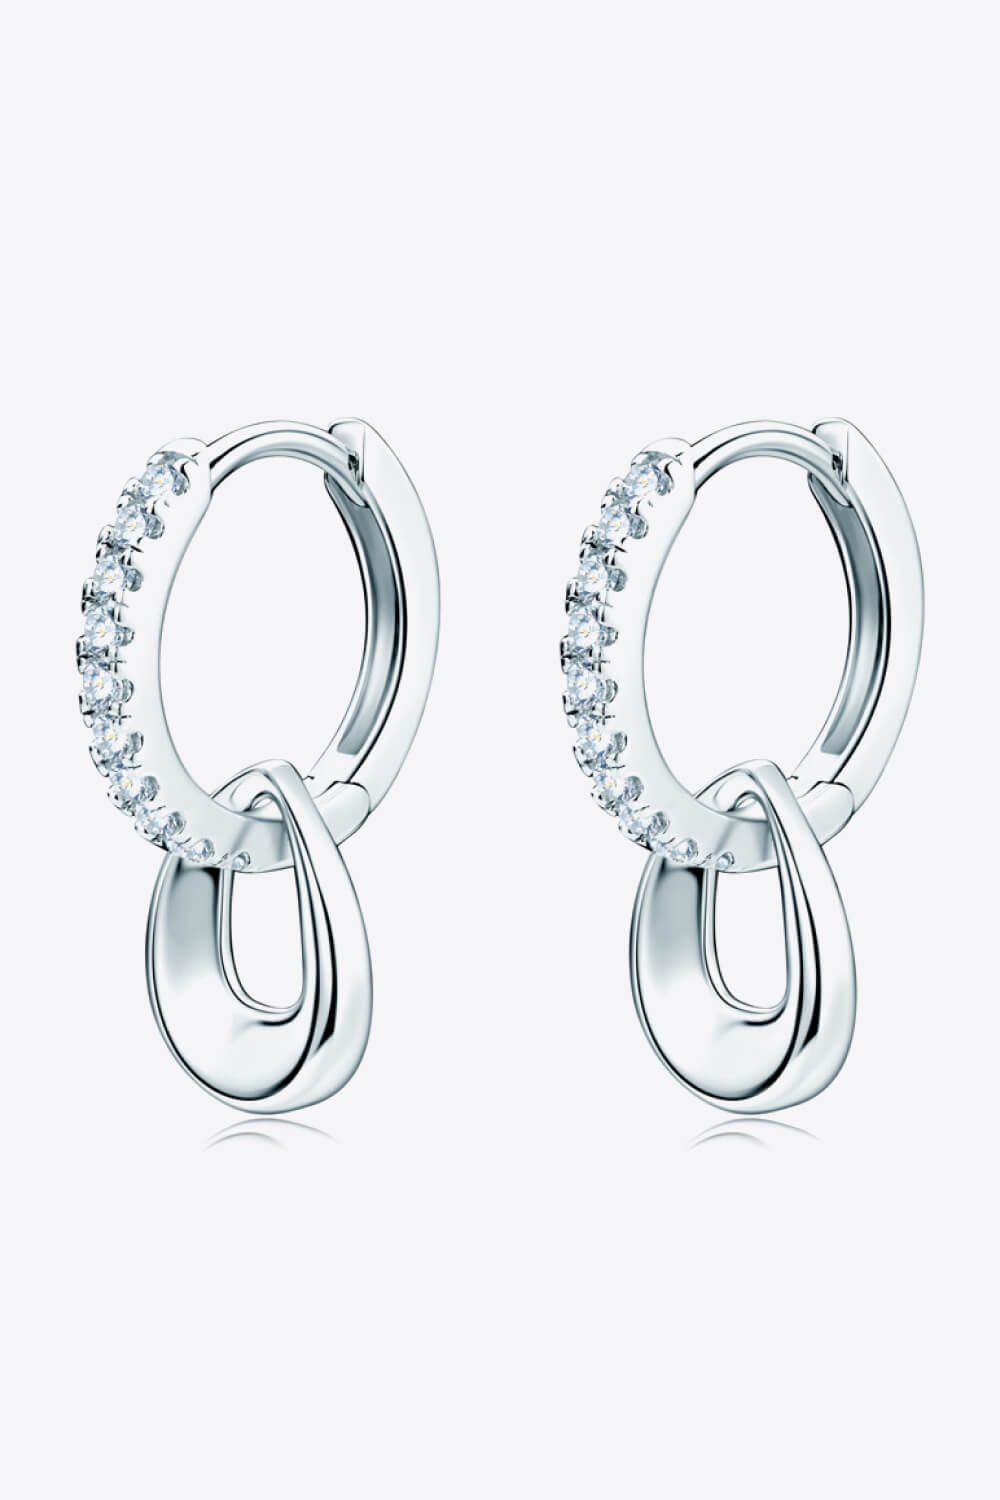 925 Sterling Silver Moissanite Double Hoop Earrings - Earrings - FITGGINS